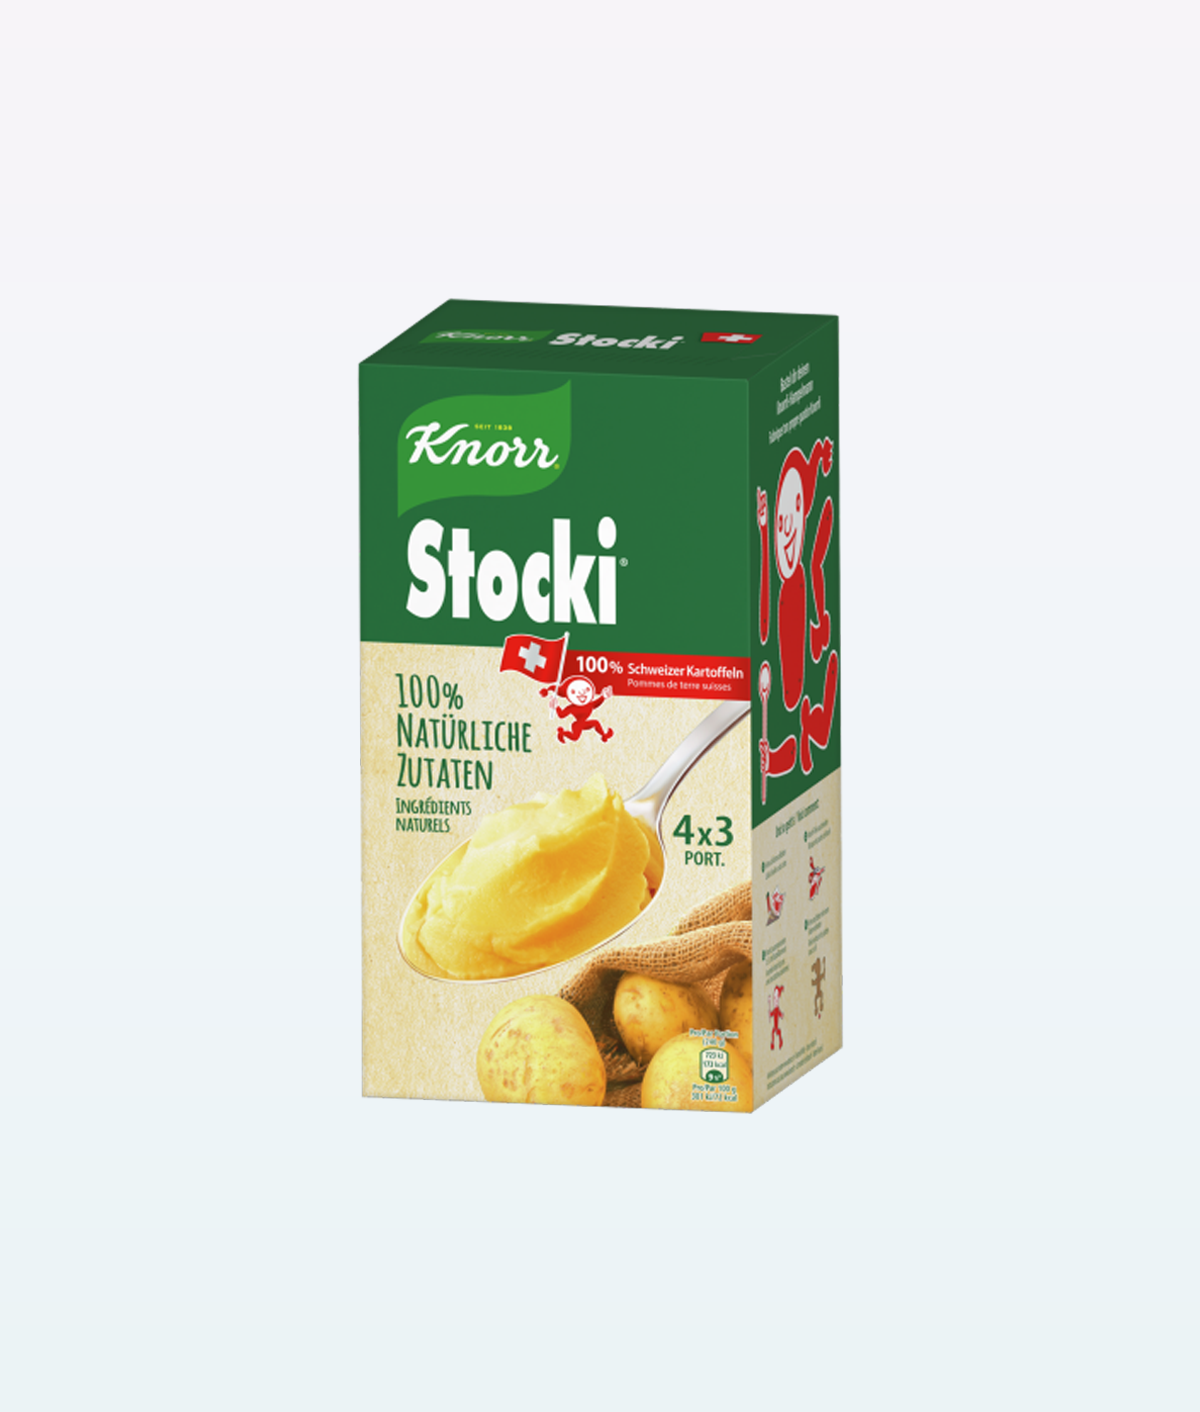 Knorr Stocki Potato 4x3 porción 440g